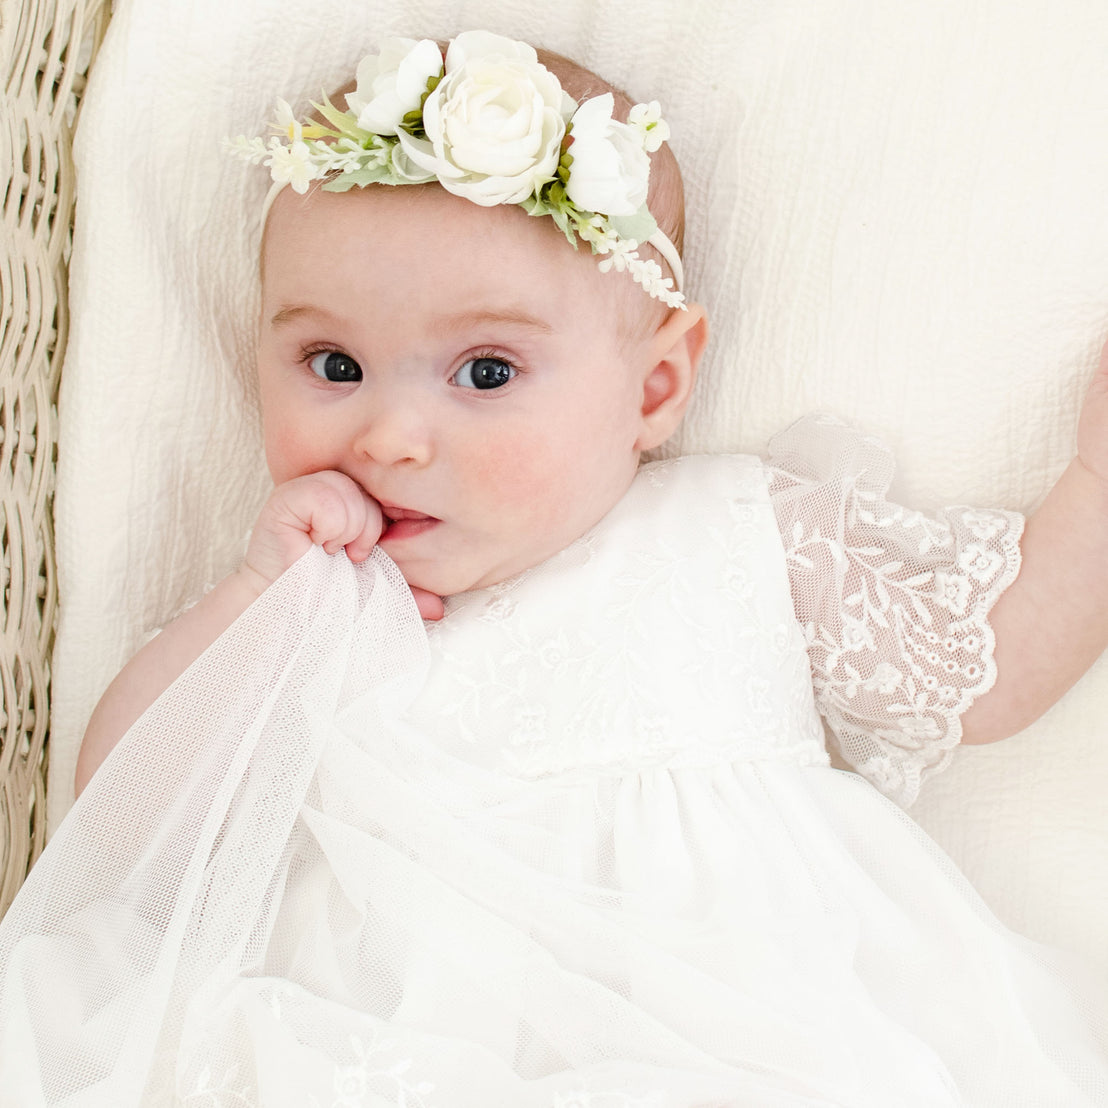 Flower headband on baby girl wearing Ella lace romper dress